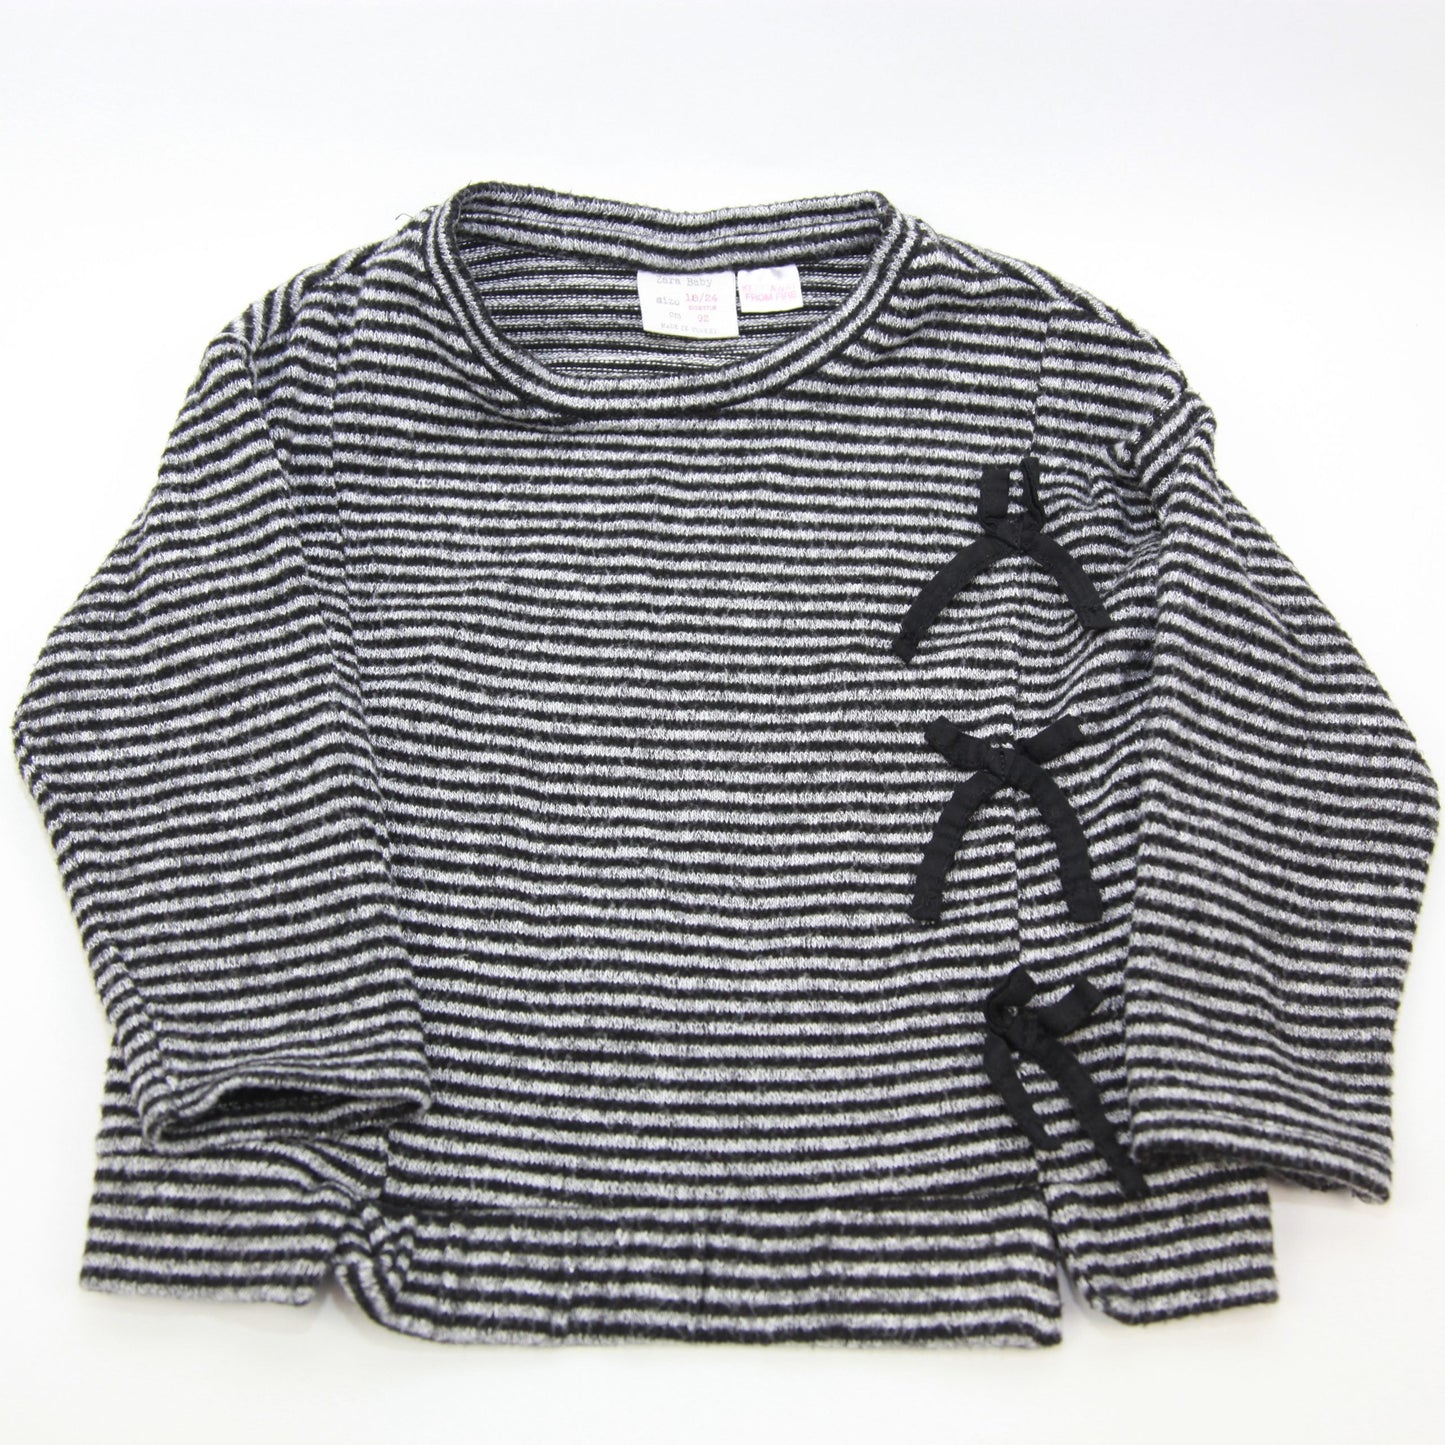 Zara Baby Sweater 18-24M 